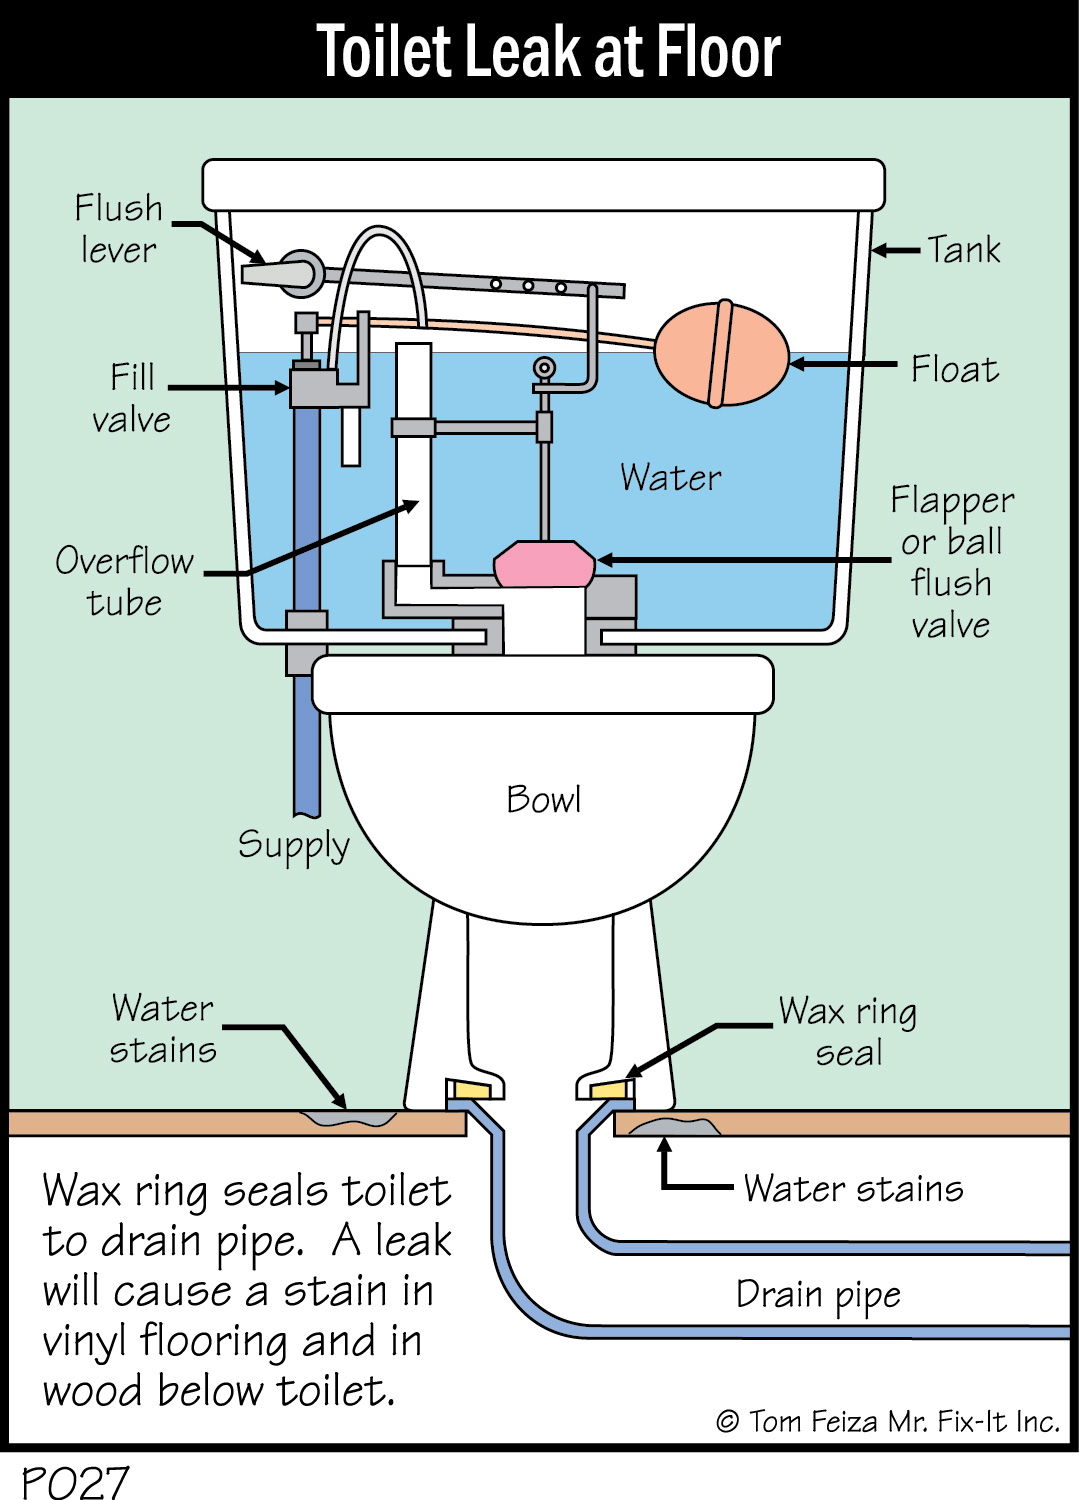 P027C - Toilet Leak at Floor_300dpi